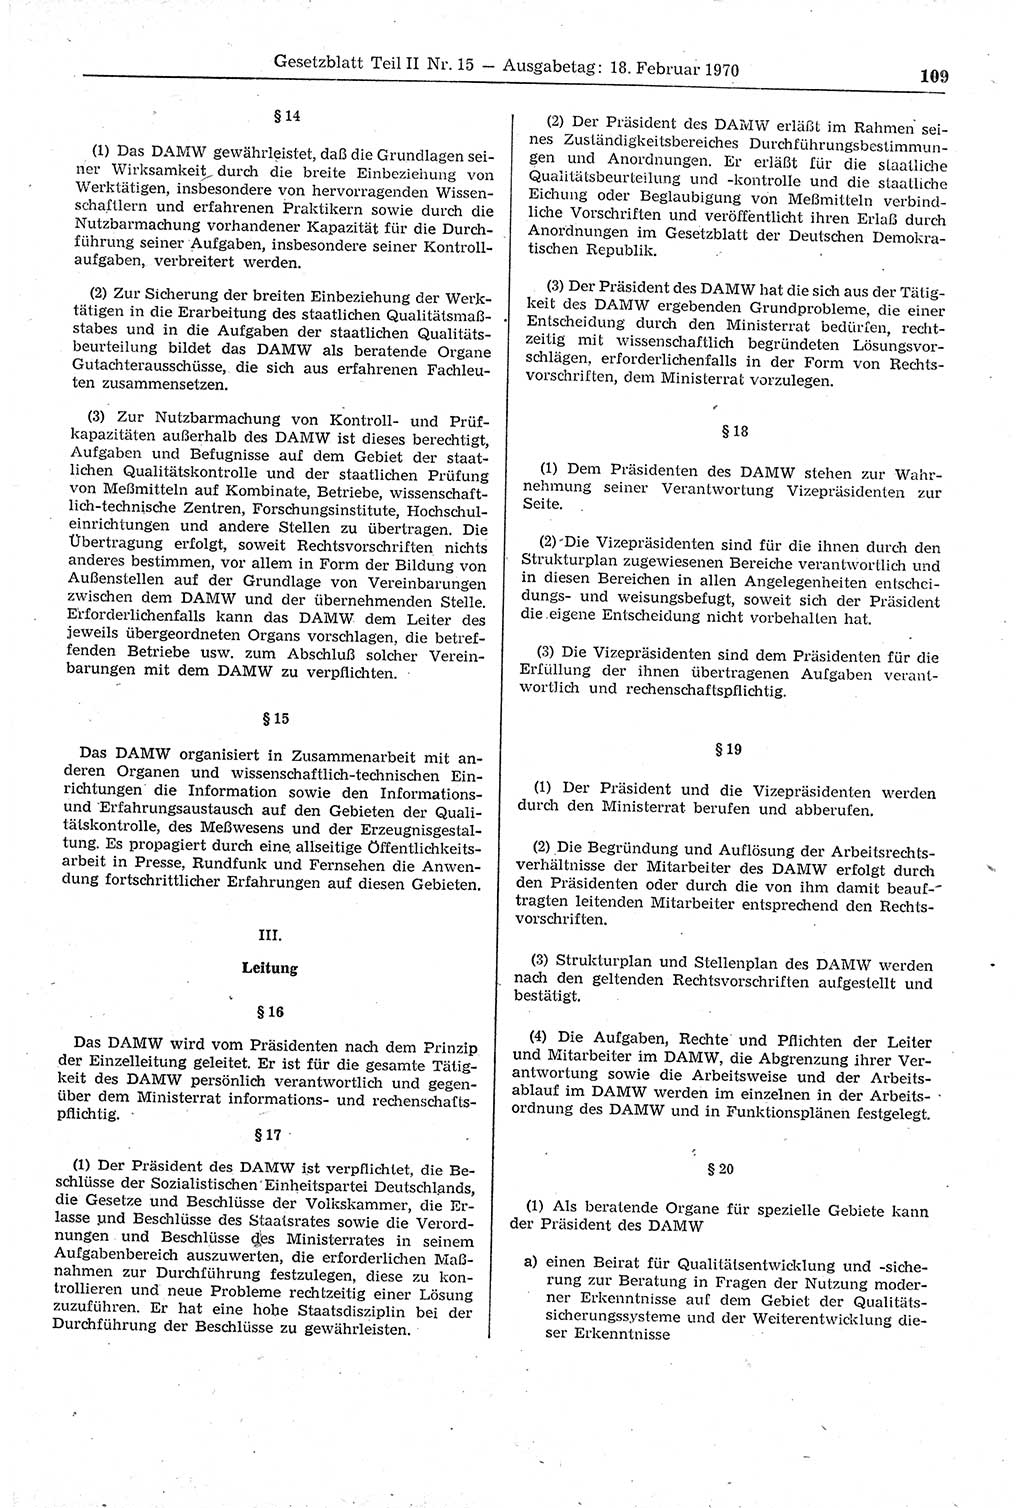 Gesetzblatt (GBl.) der Deutschen Demokratischen Republik (DDR) Teil ⅠⅠ 1970, Seite 109 (GBl. DDR ⅠⅠ 1970, S. 109)